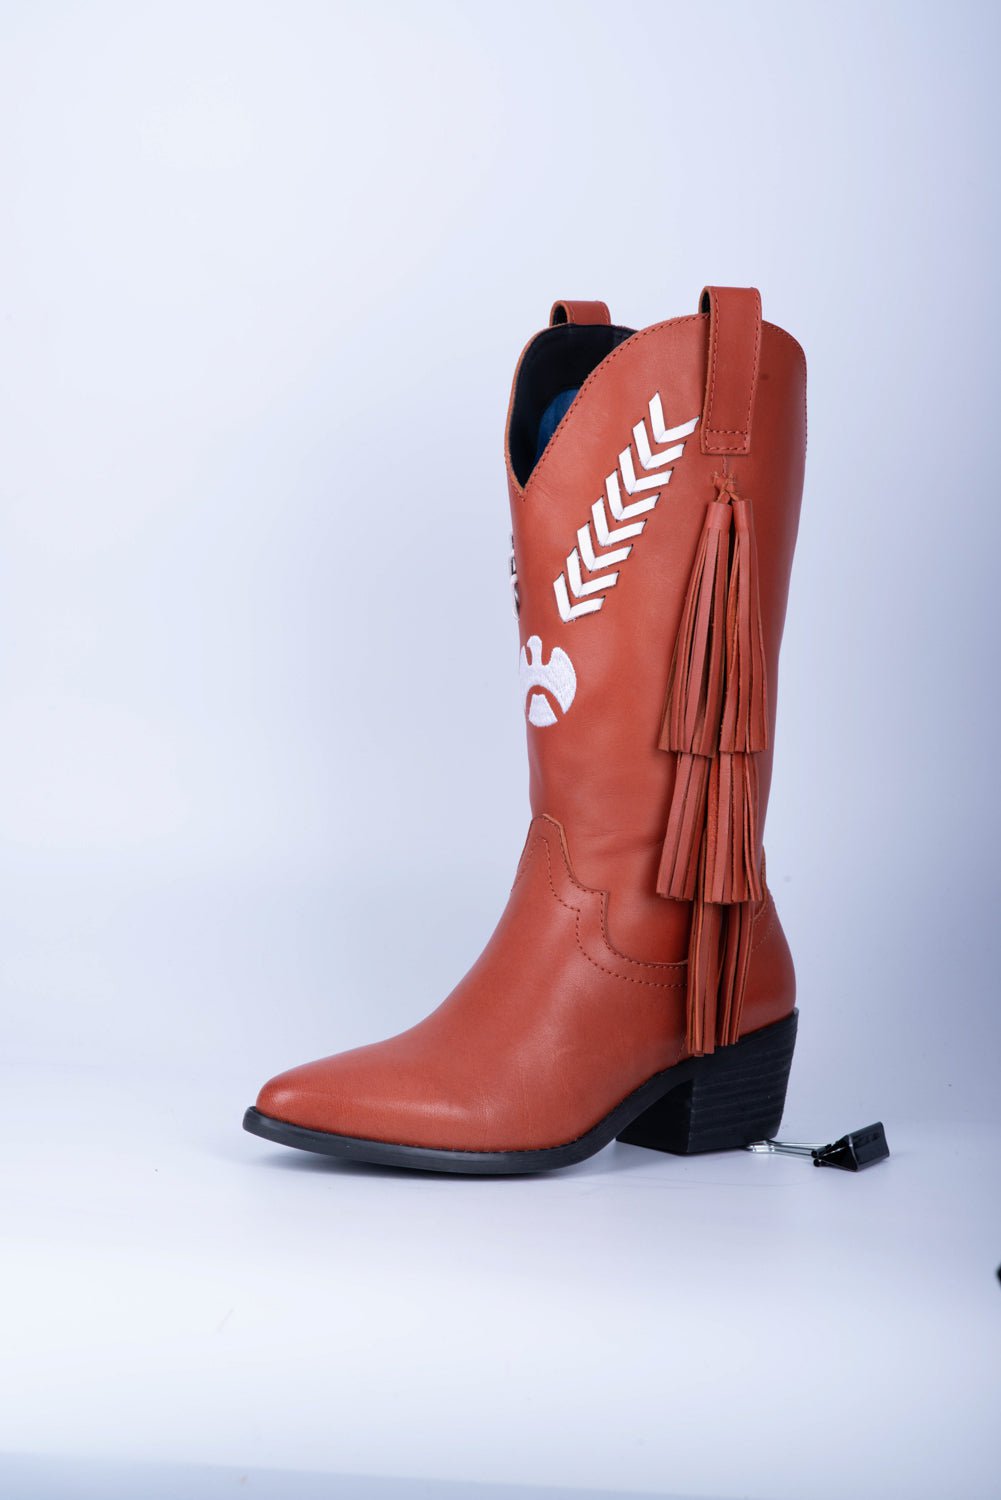 dingo boots with fringe